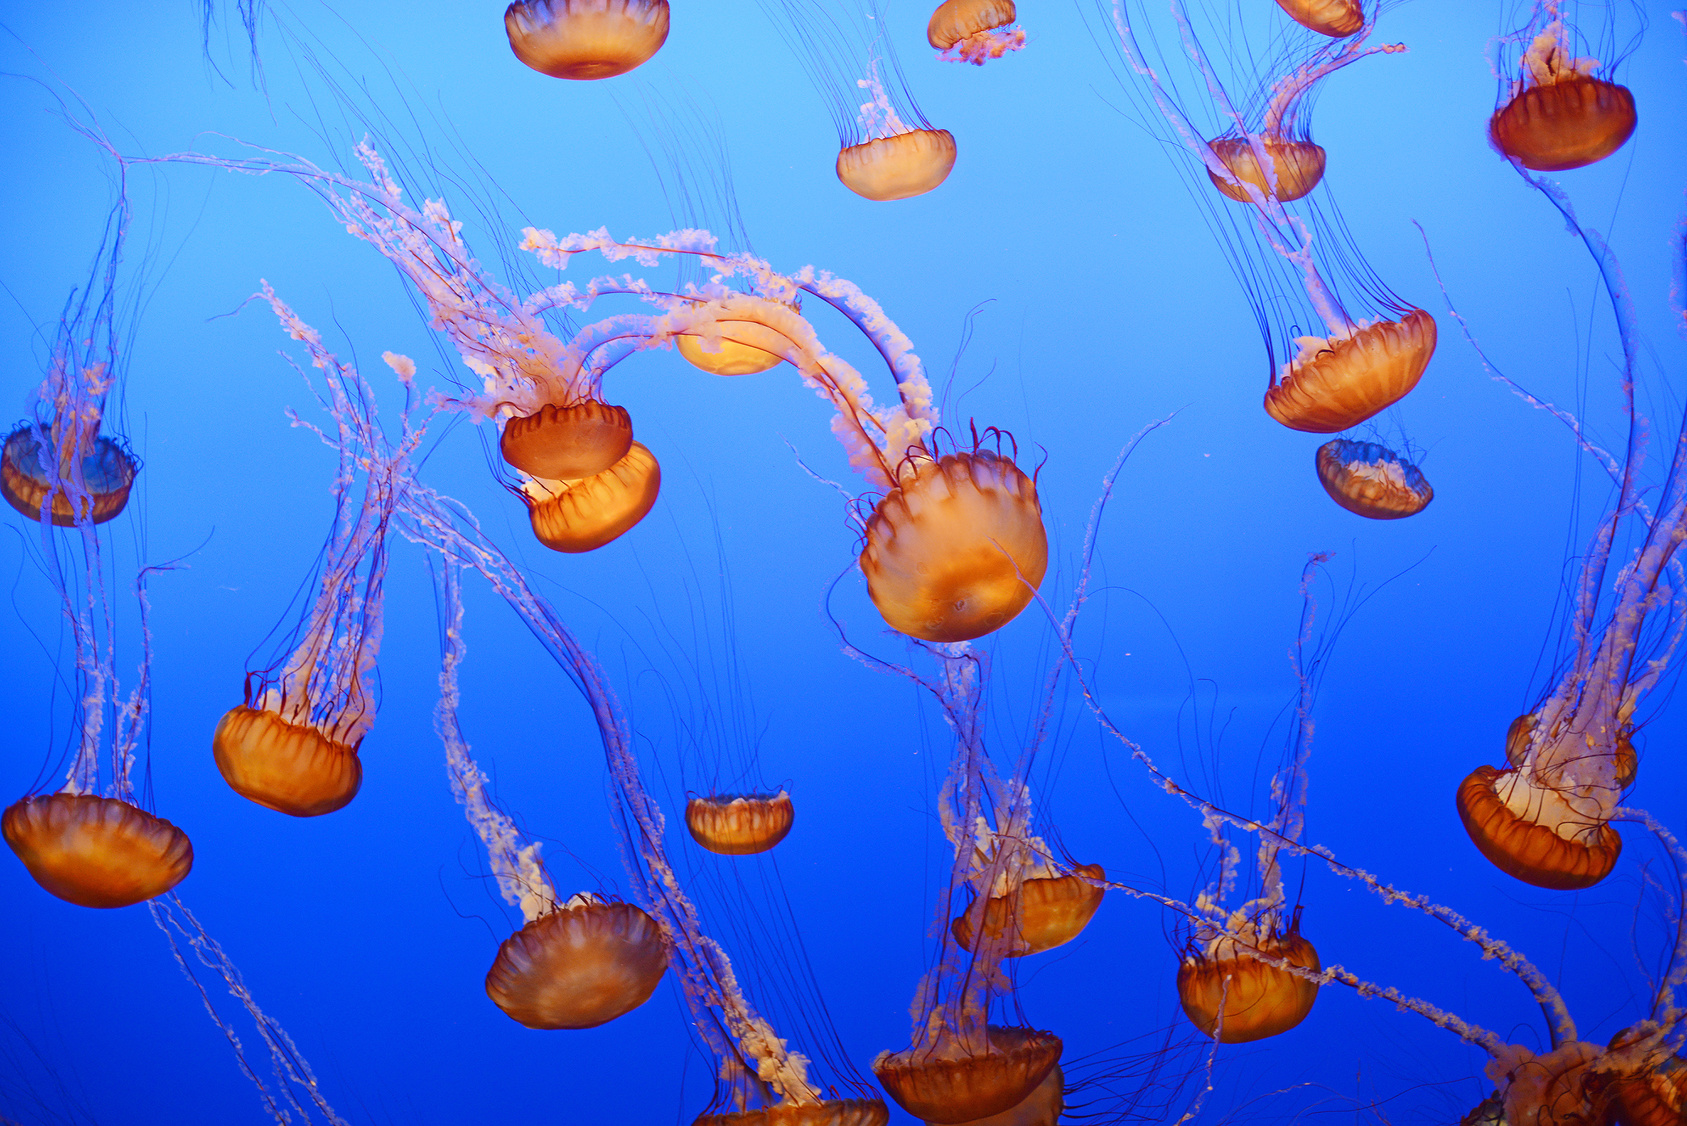 Le bal gracieux des méduses à l'aquarium de Monterey Bay. © portibal, Fotolia